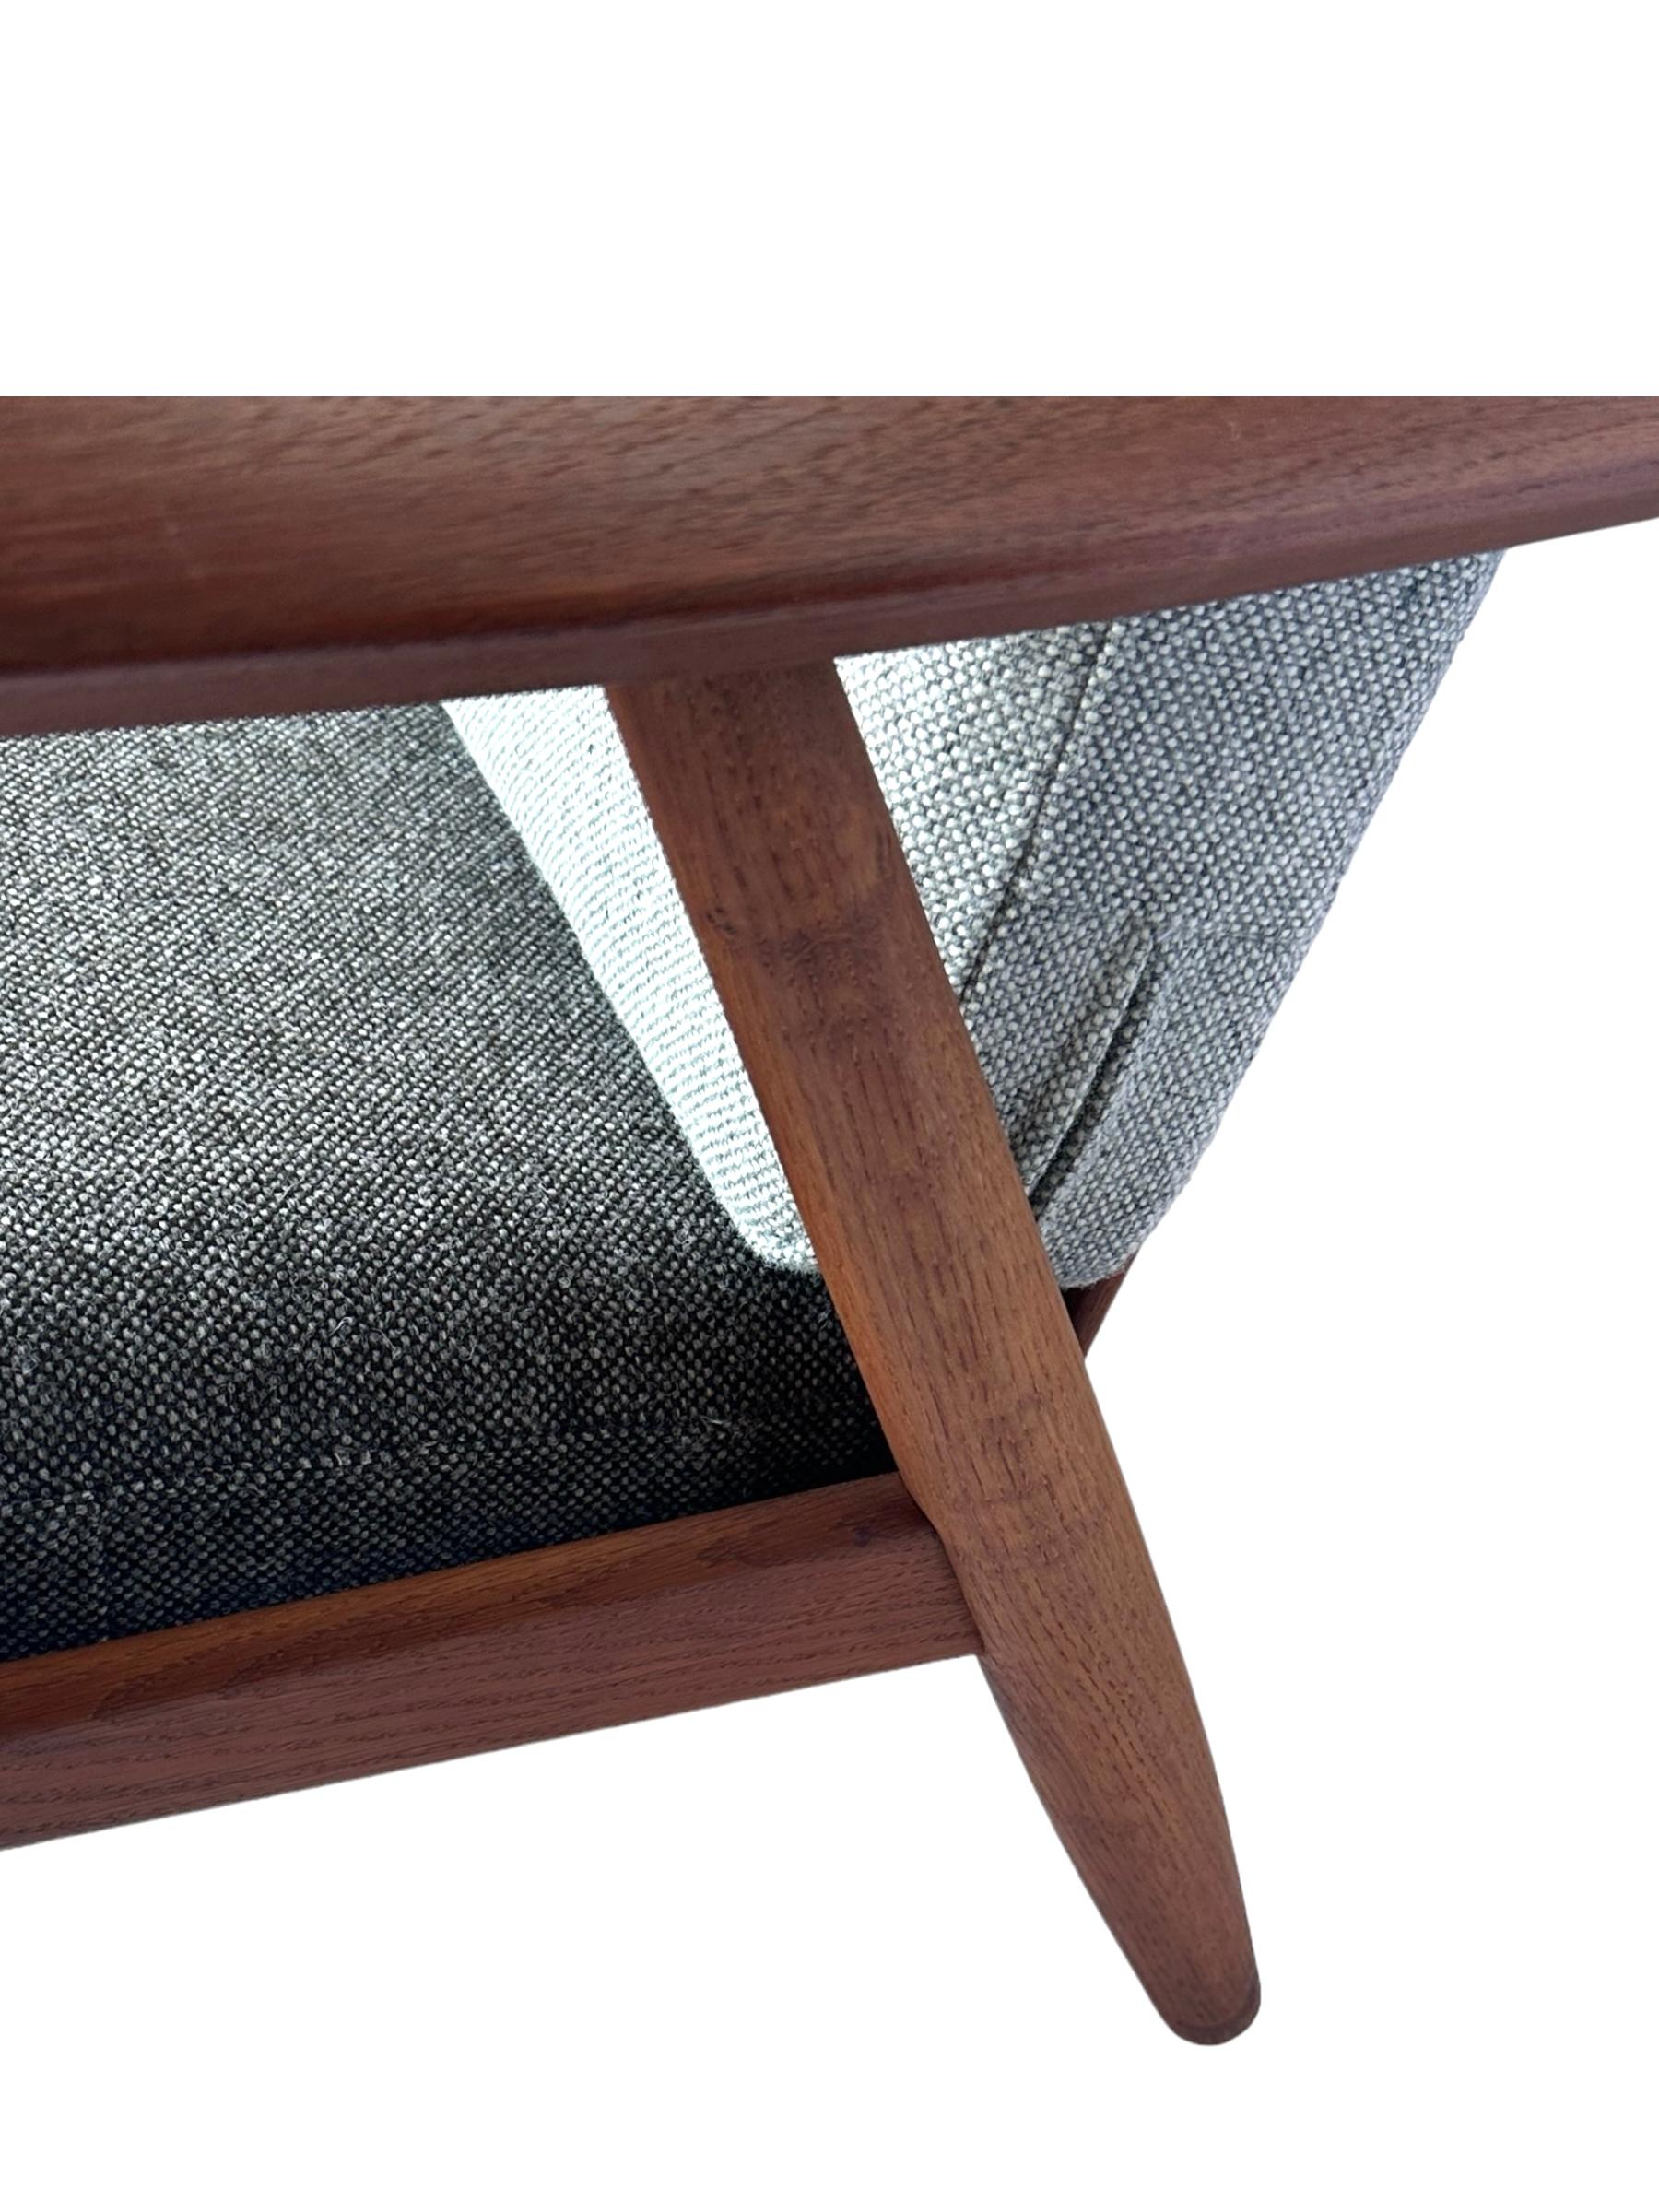 Hans J. Wegner for Getama Signed Sofa with new Mataram Upholstery For Sale 6